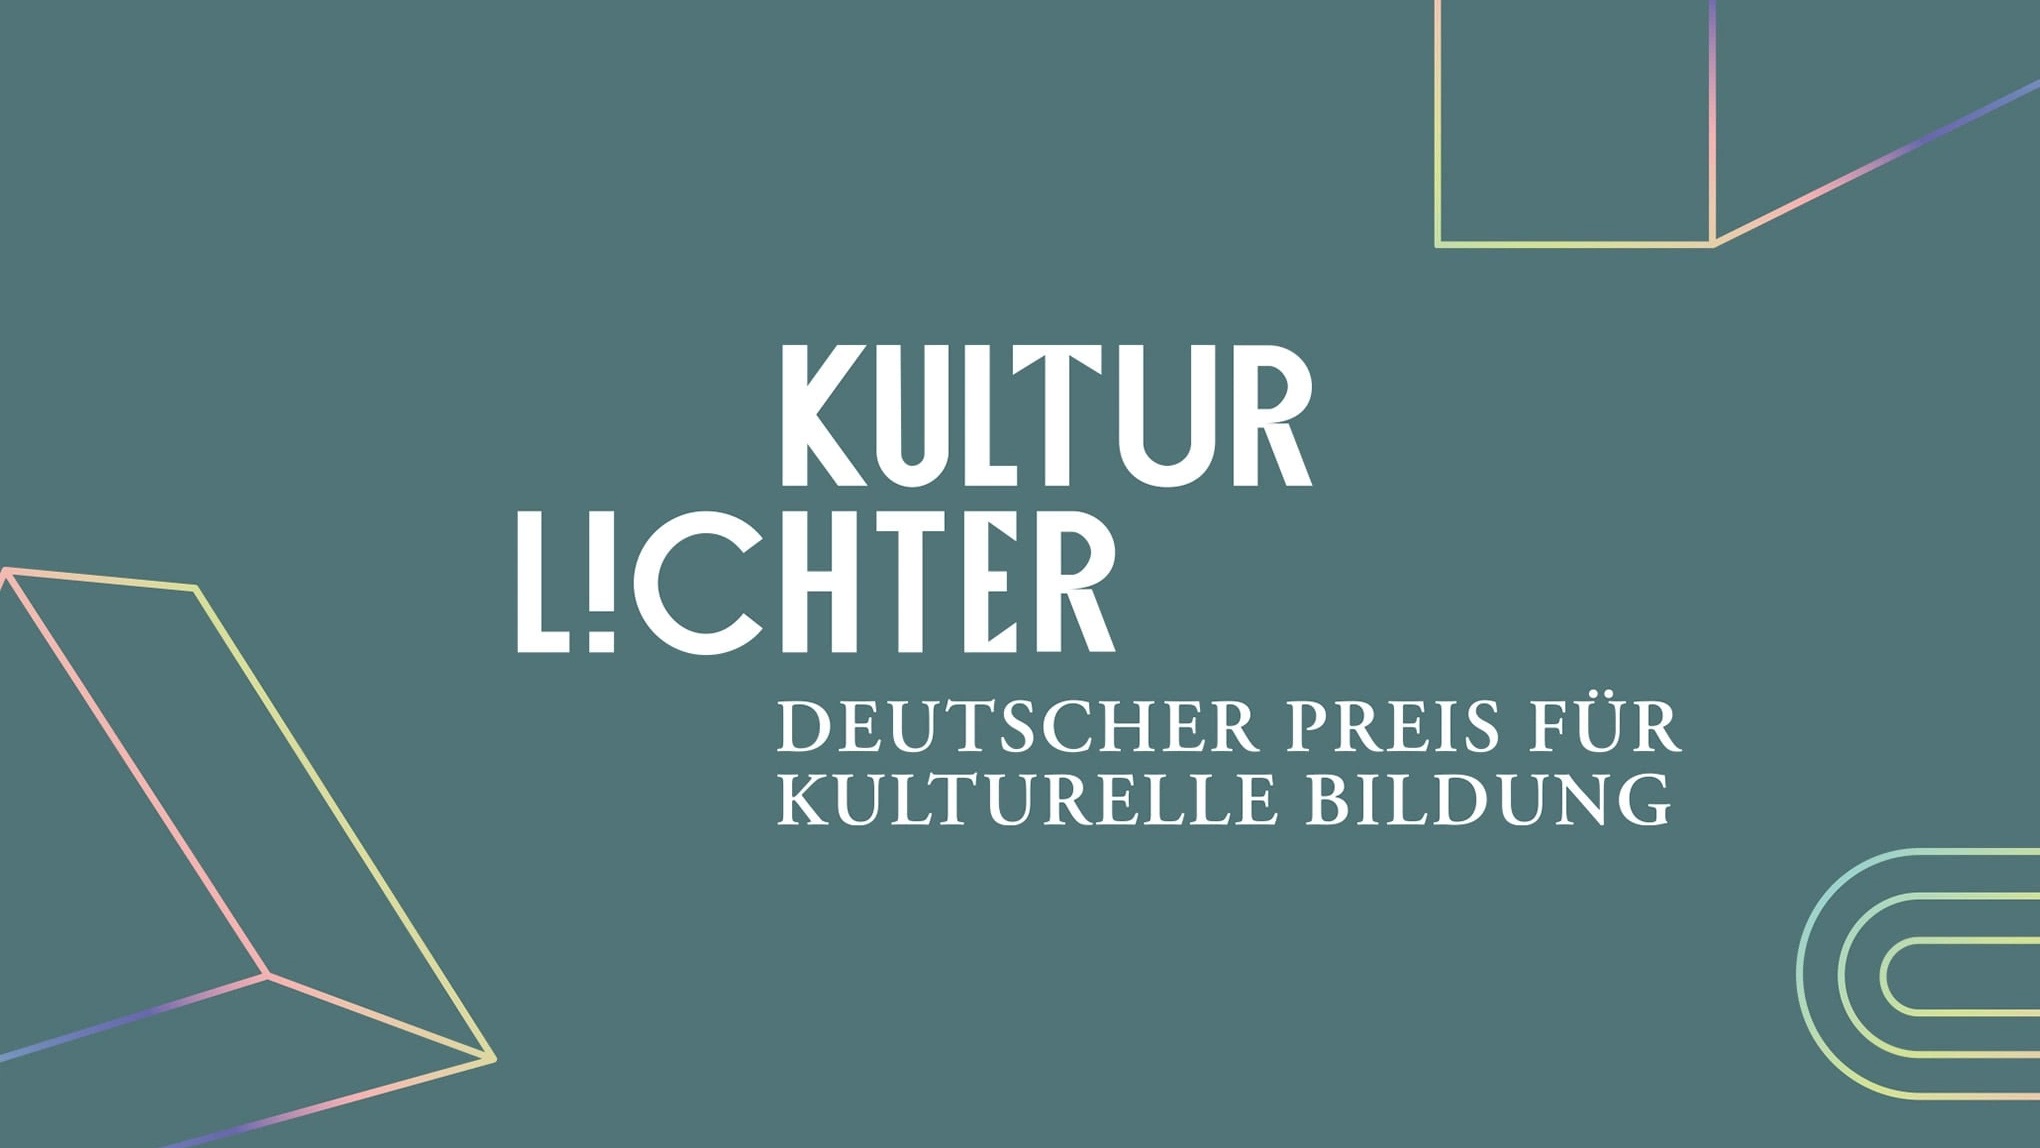 Auf dunkelgr&uuml;nem Hintergrund steht &quot;Kultur Lichter. Deutscher Preis f&uuml;r kulturelle Bildung&quot;.